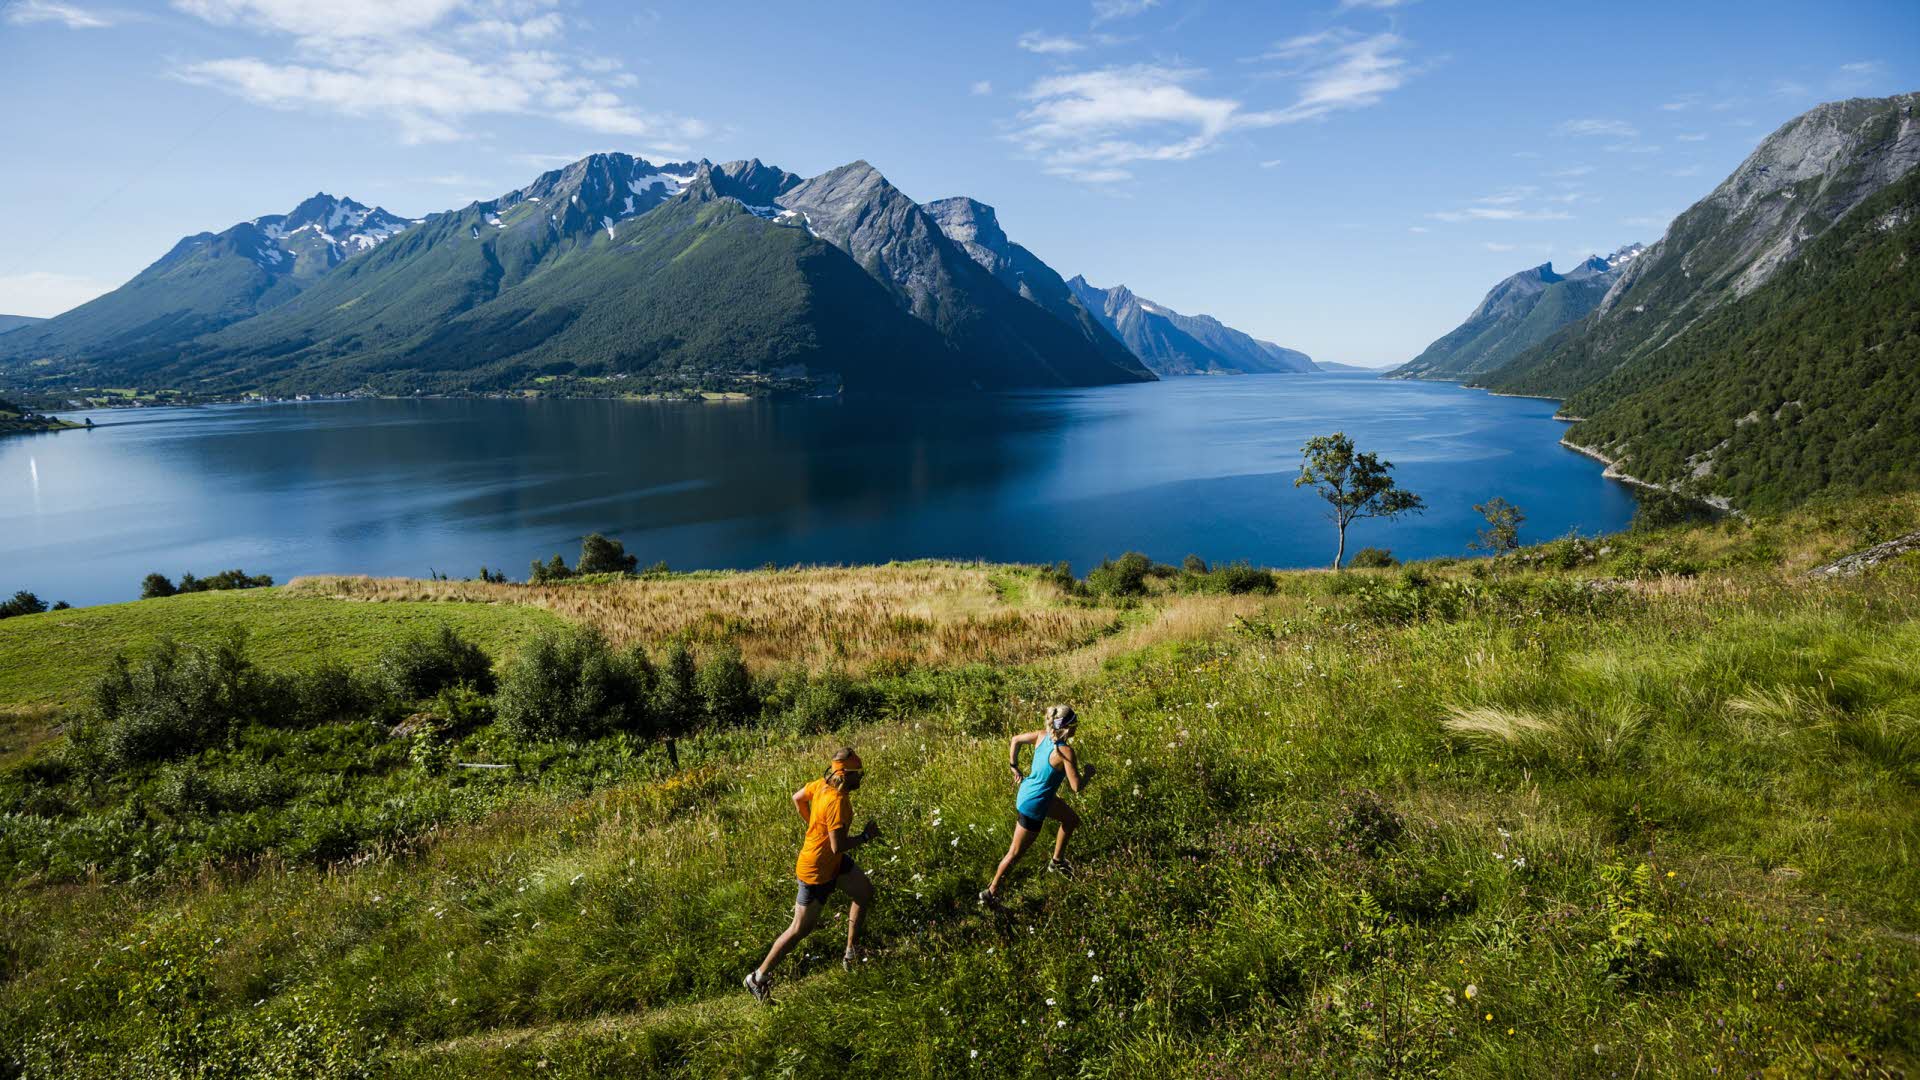 ヨルンフィヨルド(hjorondfjord)の感動的な山々を背に、夏にジョギングをする2人